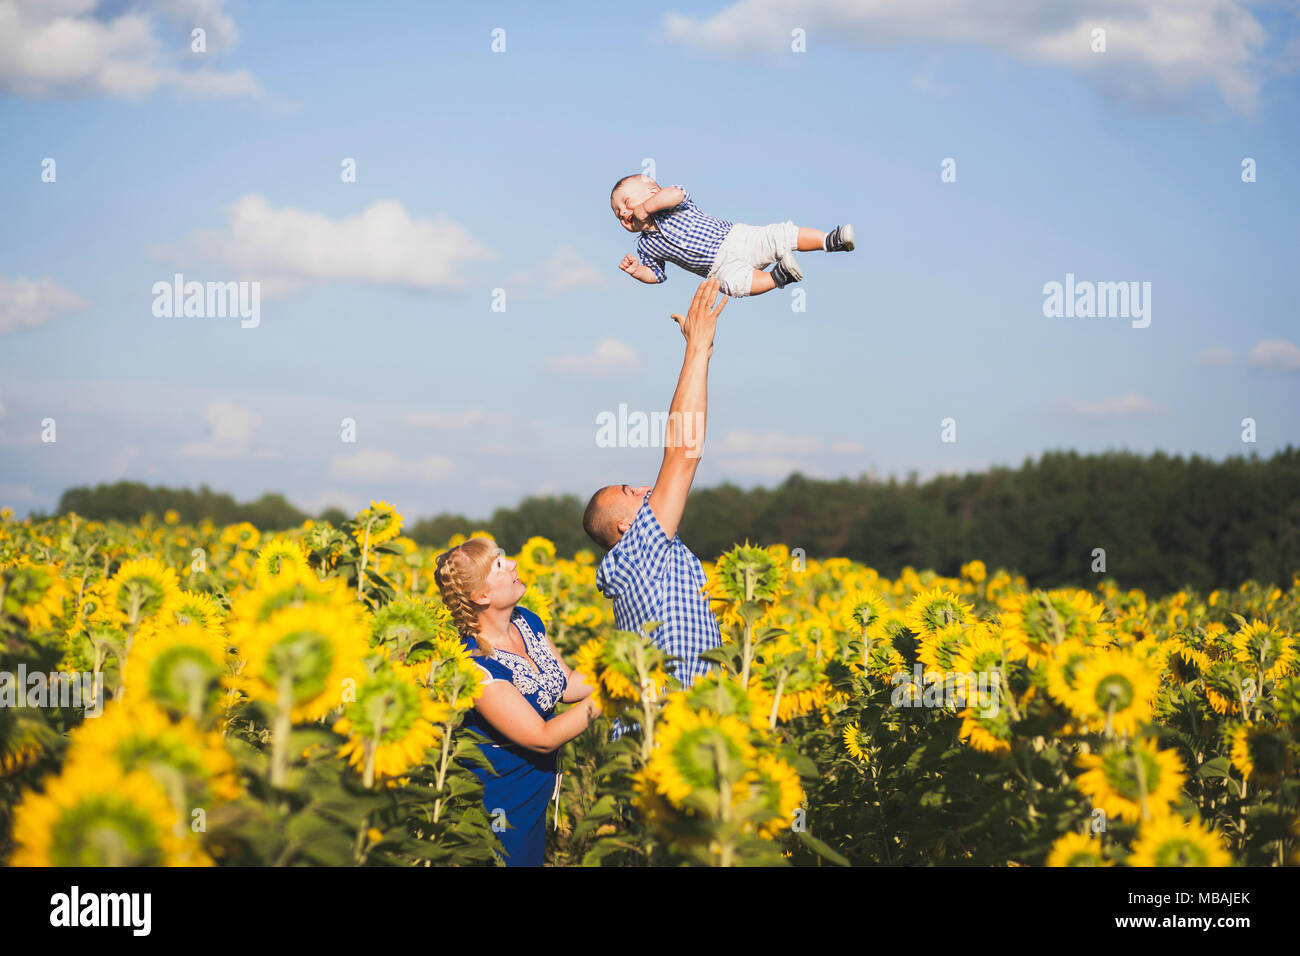 Glückliche junge Familie von drei kaukasischen Personen außerhalb Spaß an schönen, sonnigen Sonnenblumenfeld. Vater werfen süße kleine Babys bis hoch in die Luft. Uhr Stockfoto